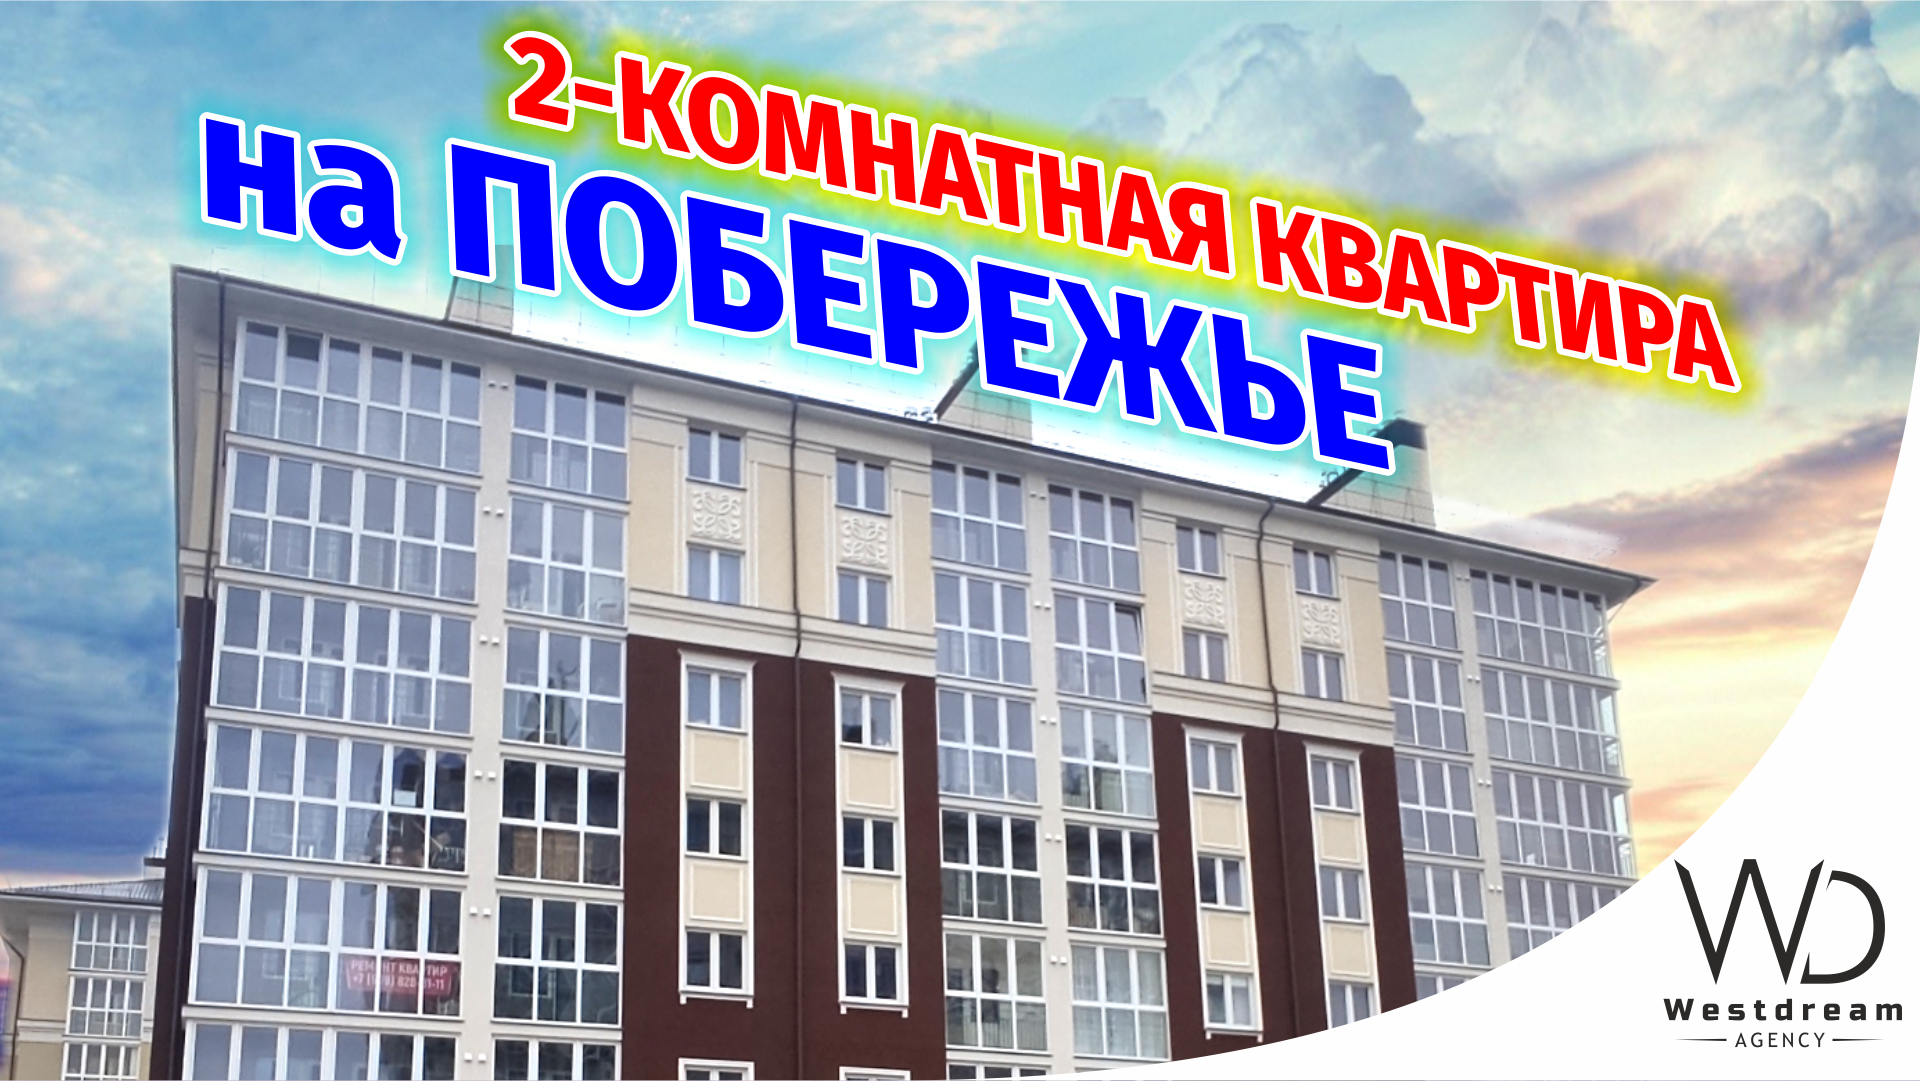 Купить двухкомнатную квартиру в городе Светлогорске от застройщика. Агентство Westdream.